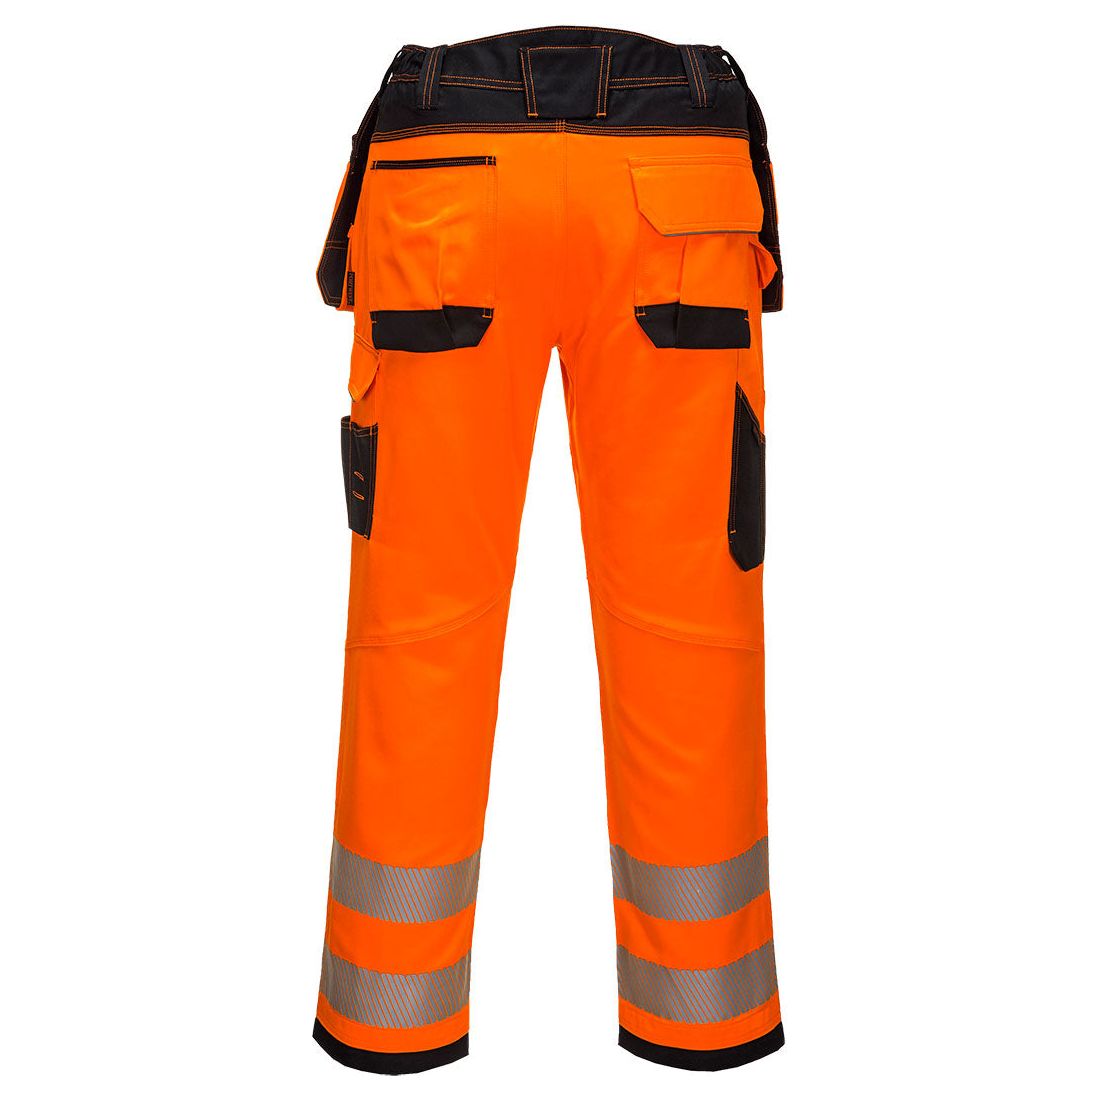 Portwest PW3 Hi - Vis Holster Work Trouser Orange